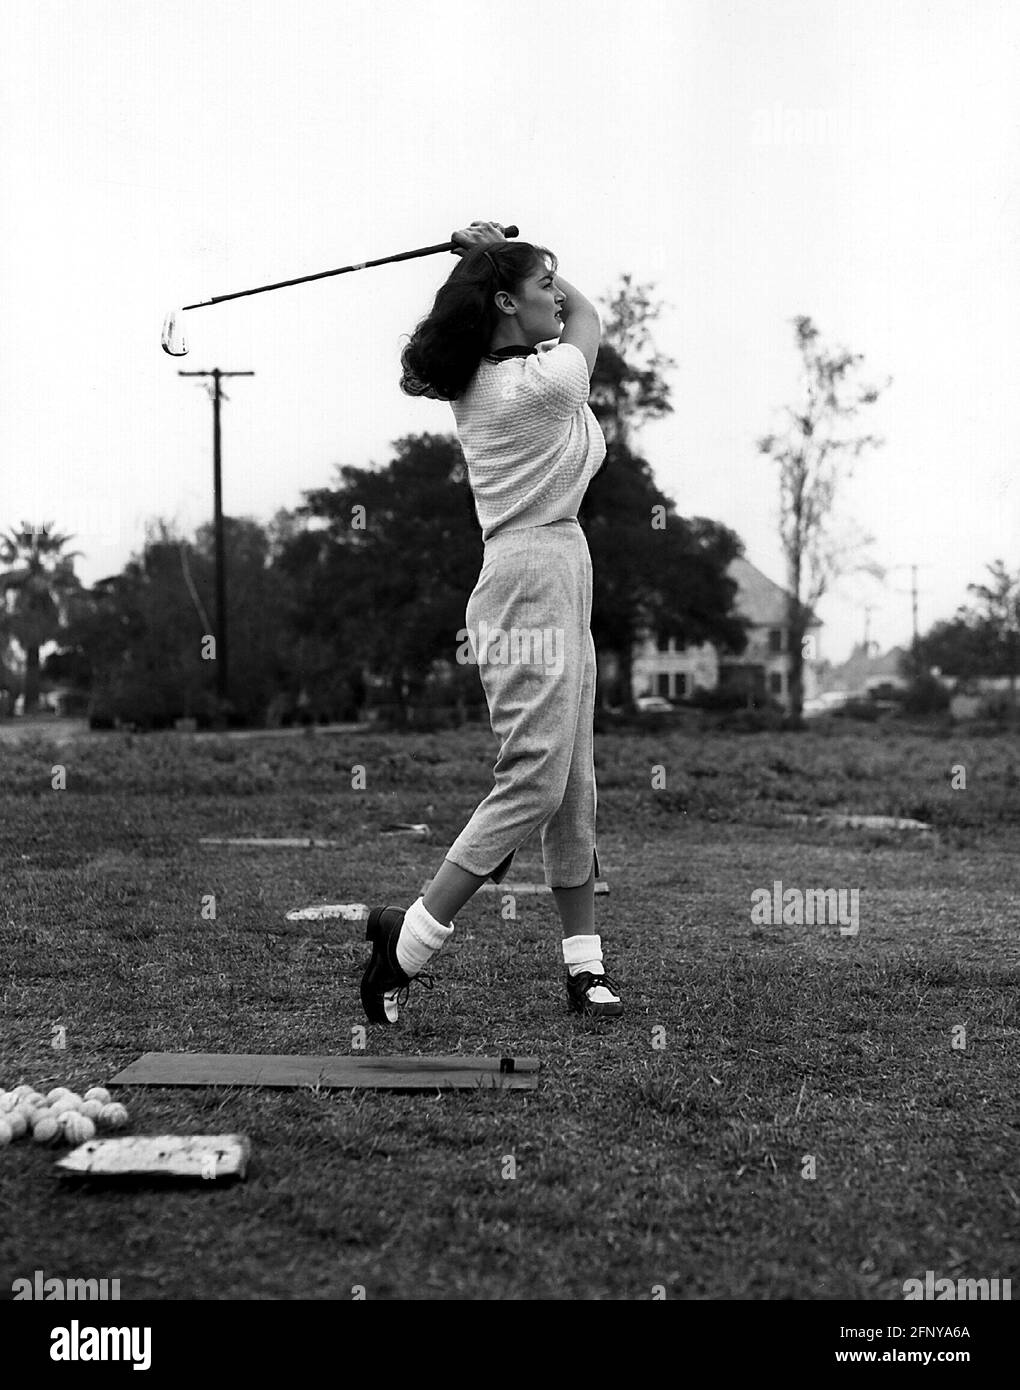 Angeli, Pier, 16.6.1932 - 12.9.1971, attrice italiana, lunghezza intera, Giocare a golf, 1950, DIRITTI-AGGIUNTIVI-CLEARANCE-INFO-NON-DISPONIBILE Foto Stock